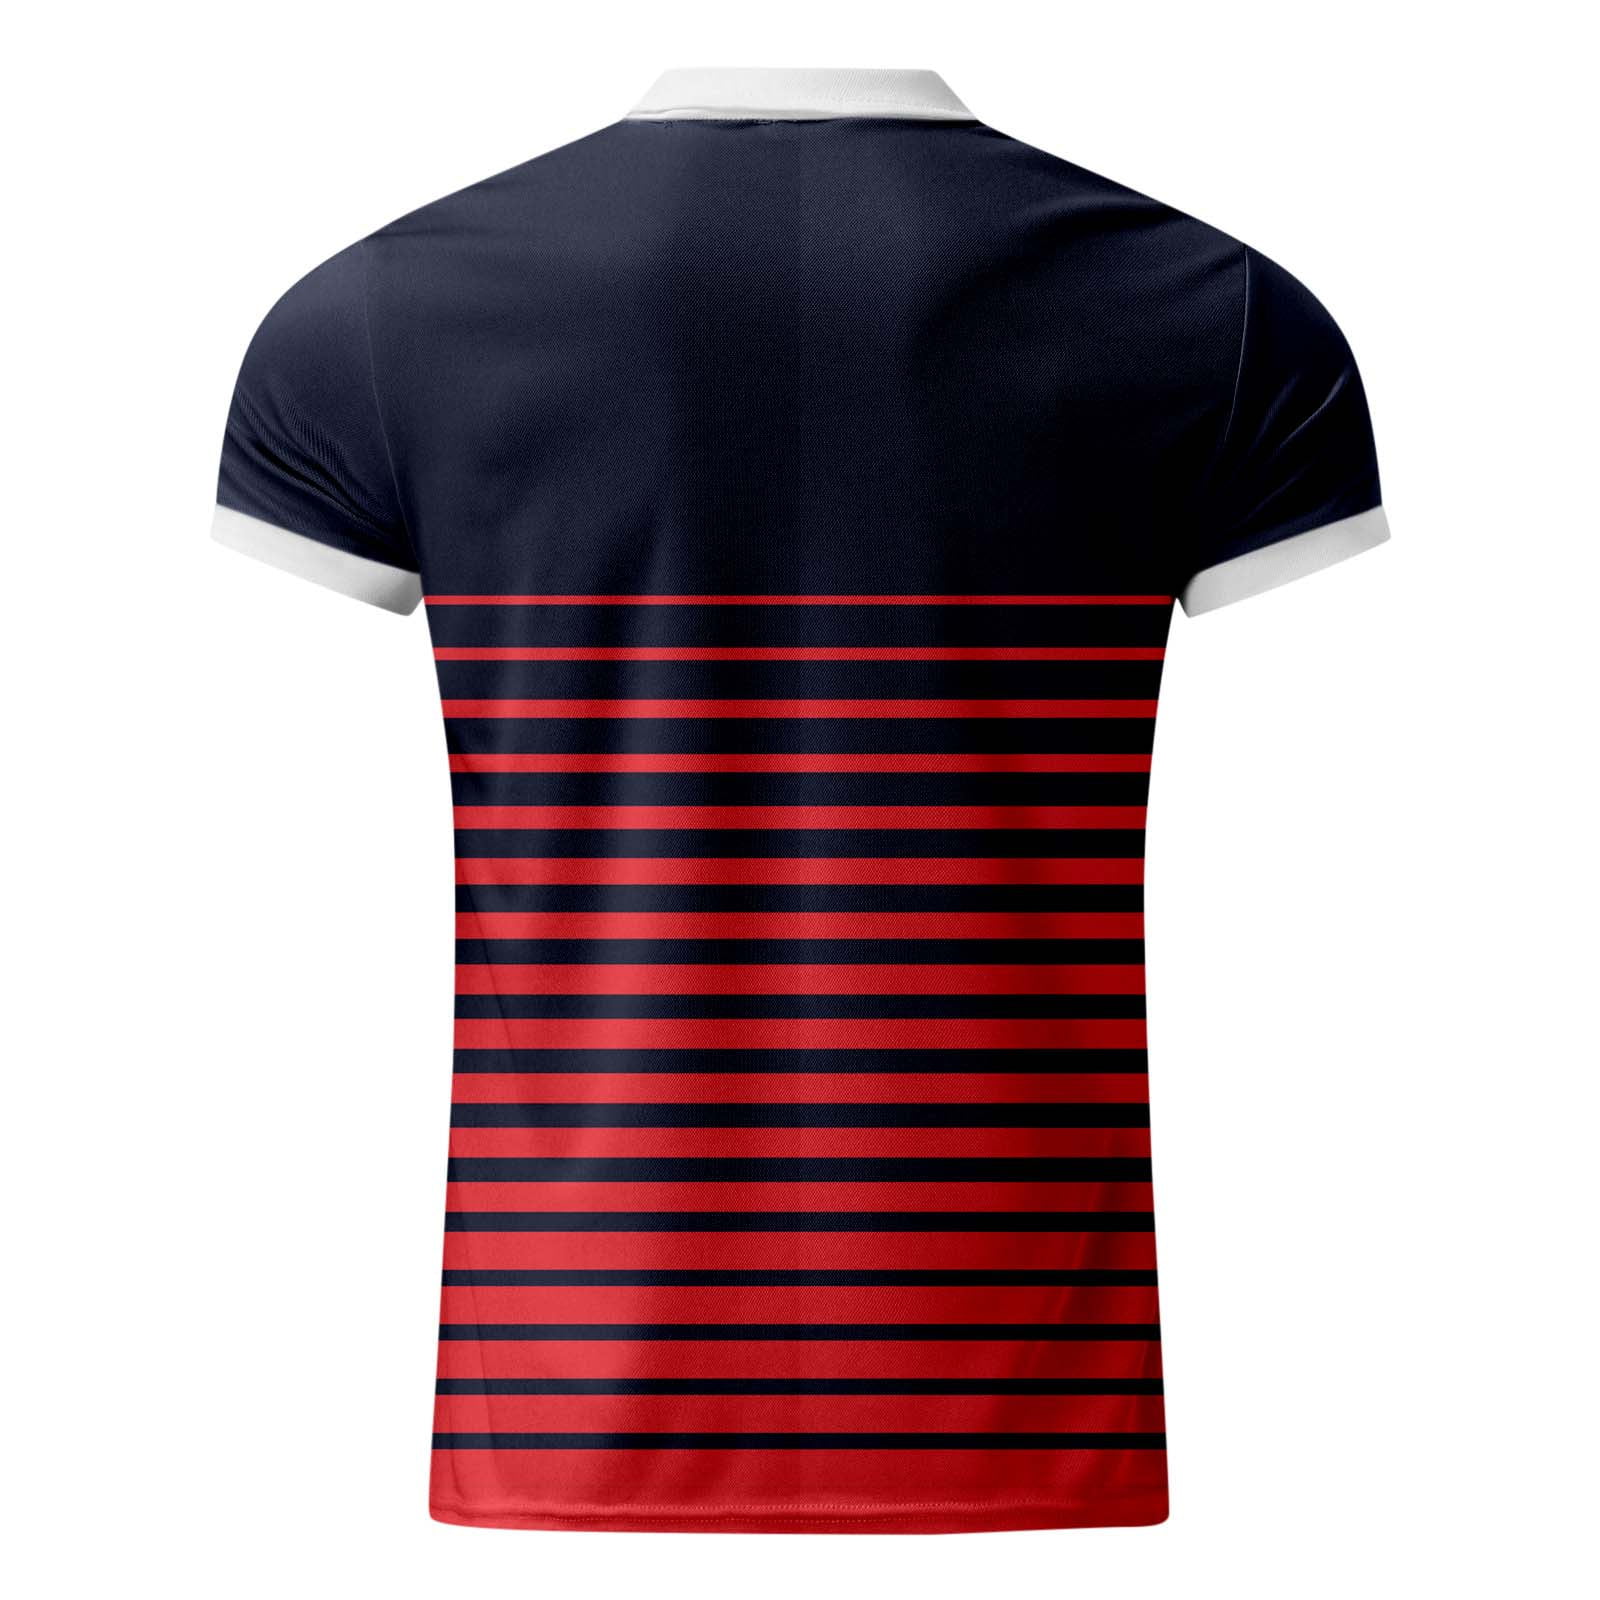 eczipvz Summer Tops Golf Shirt for Men Short Sleeve Sports Polo Shirts Mesh  Tennis T-Shirt Red,3XL 